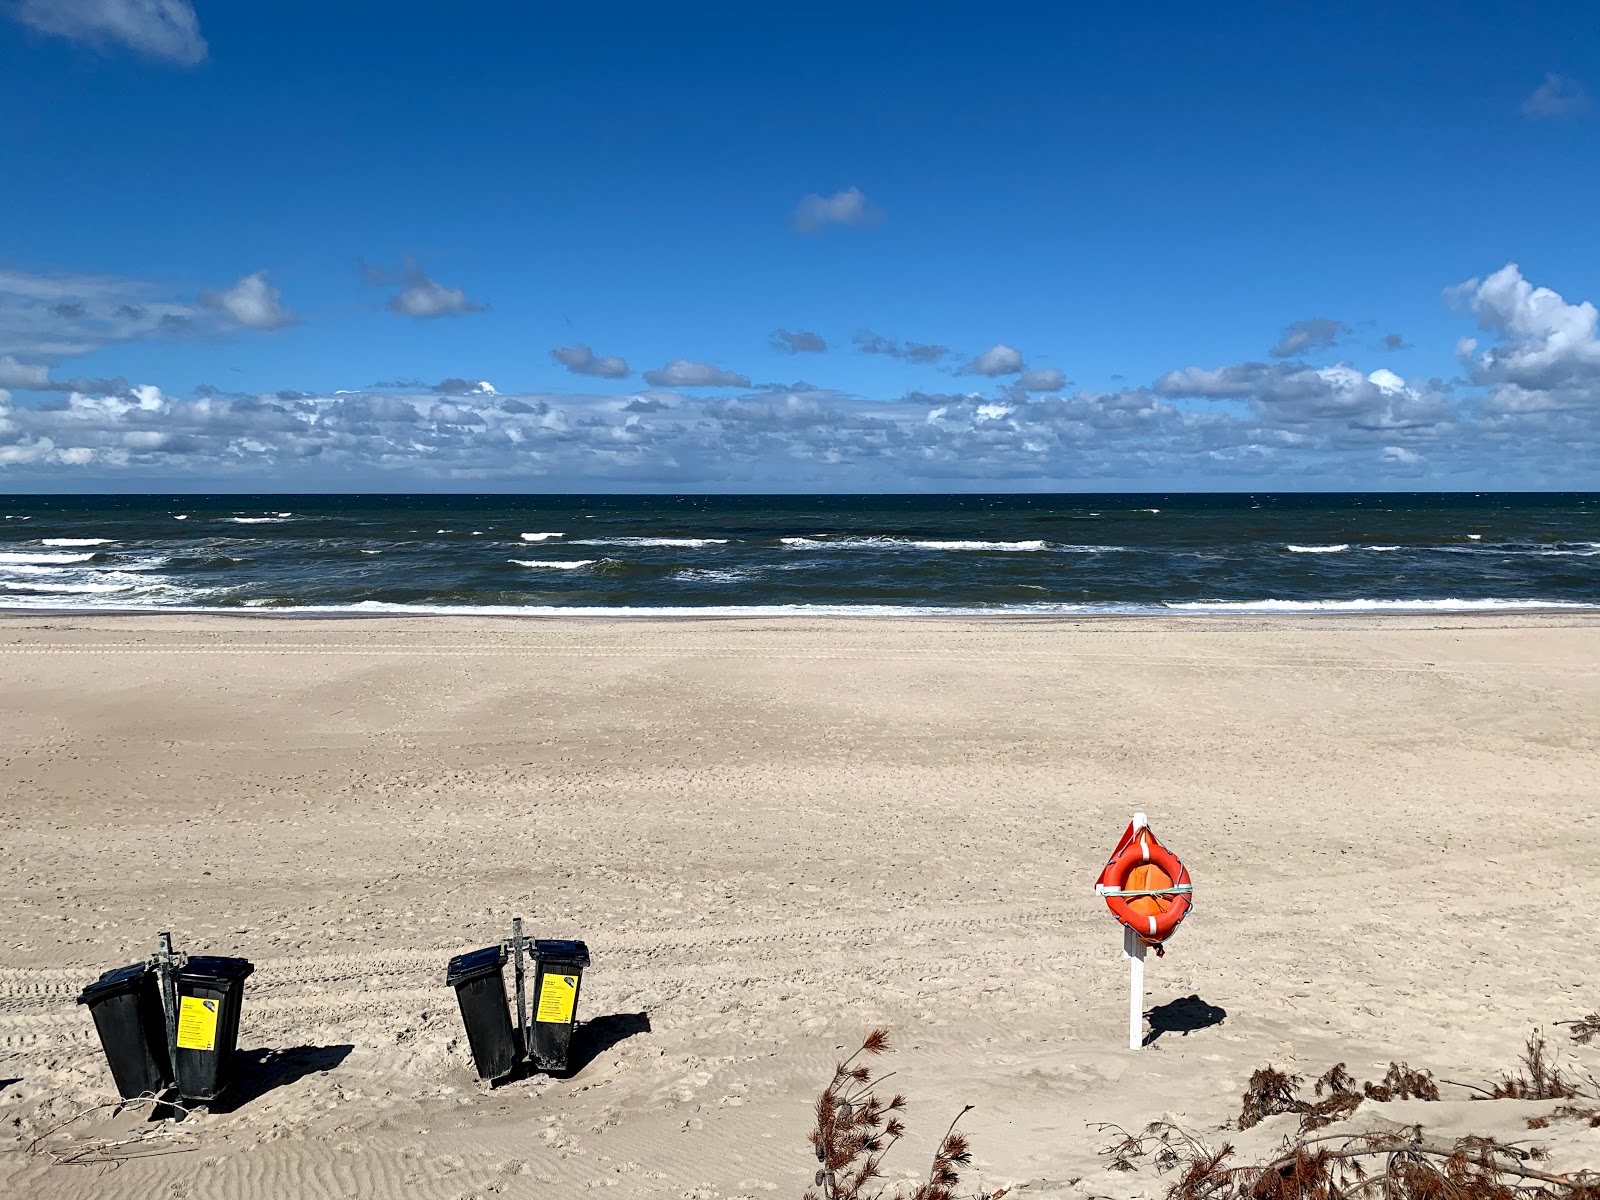 Photo de Sidselbjerg Beach - endroit populaire parmi les connaisseurs de la détente